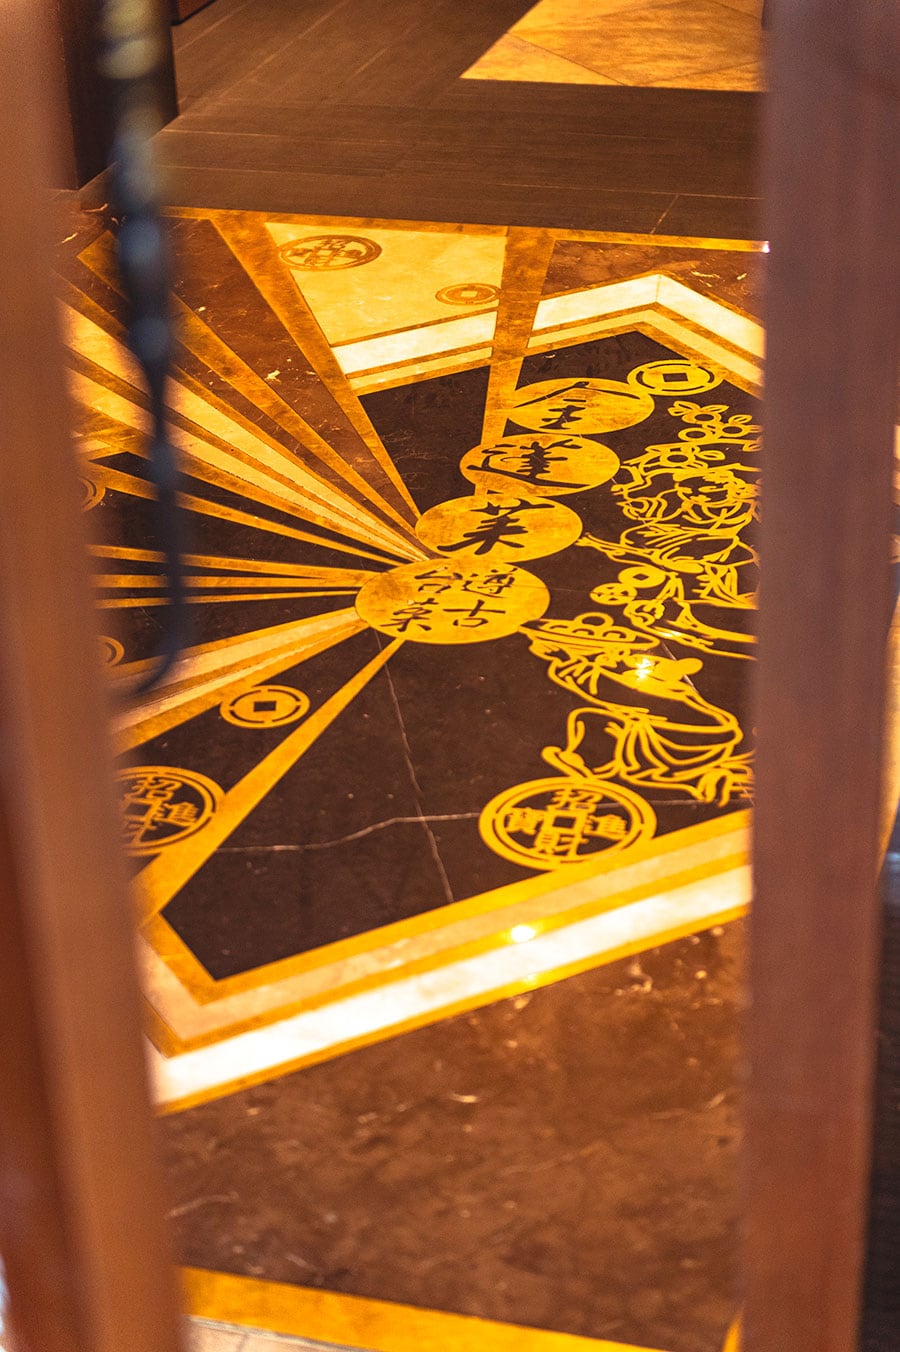 入り口の床には金細工で店名が彫られている。